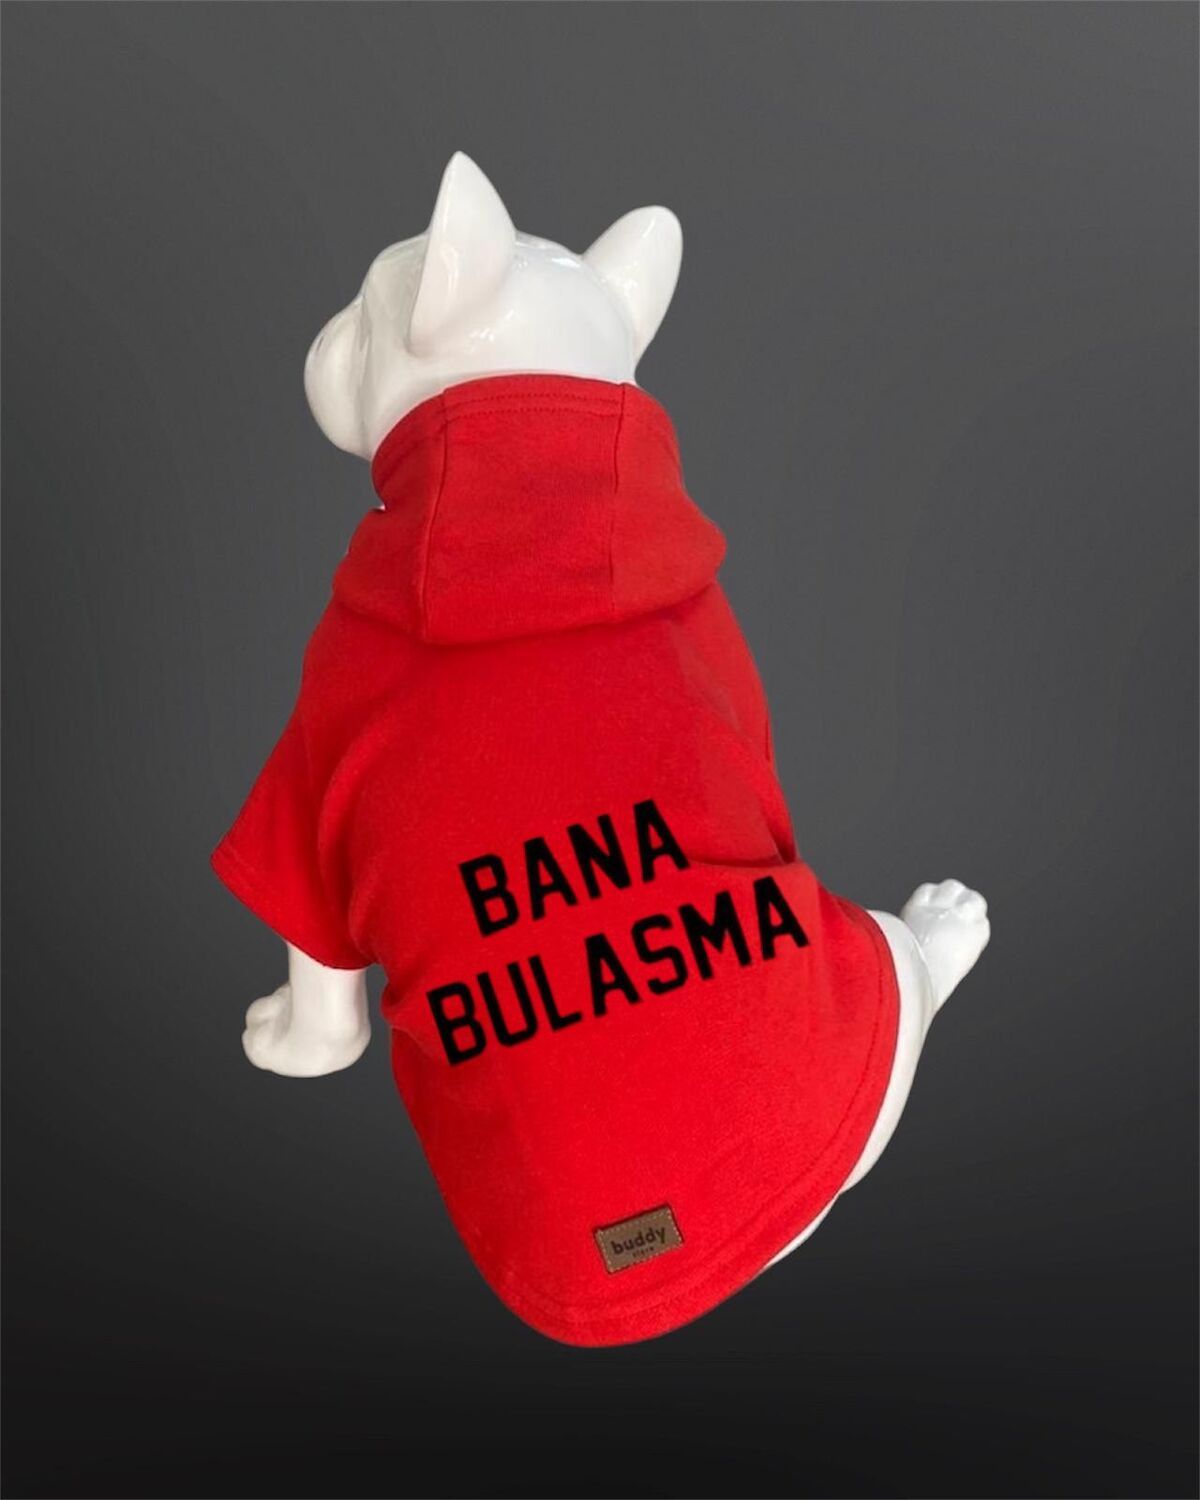 Buddy Store Kedi & Köpek Kıyafeti Sweatshirt - Bana Bulaşma Baskılı Kırmızı Sweatshirt